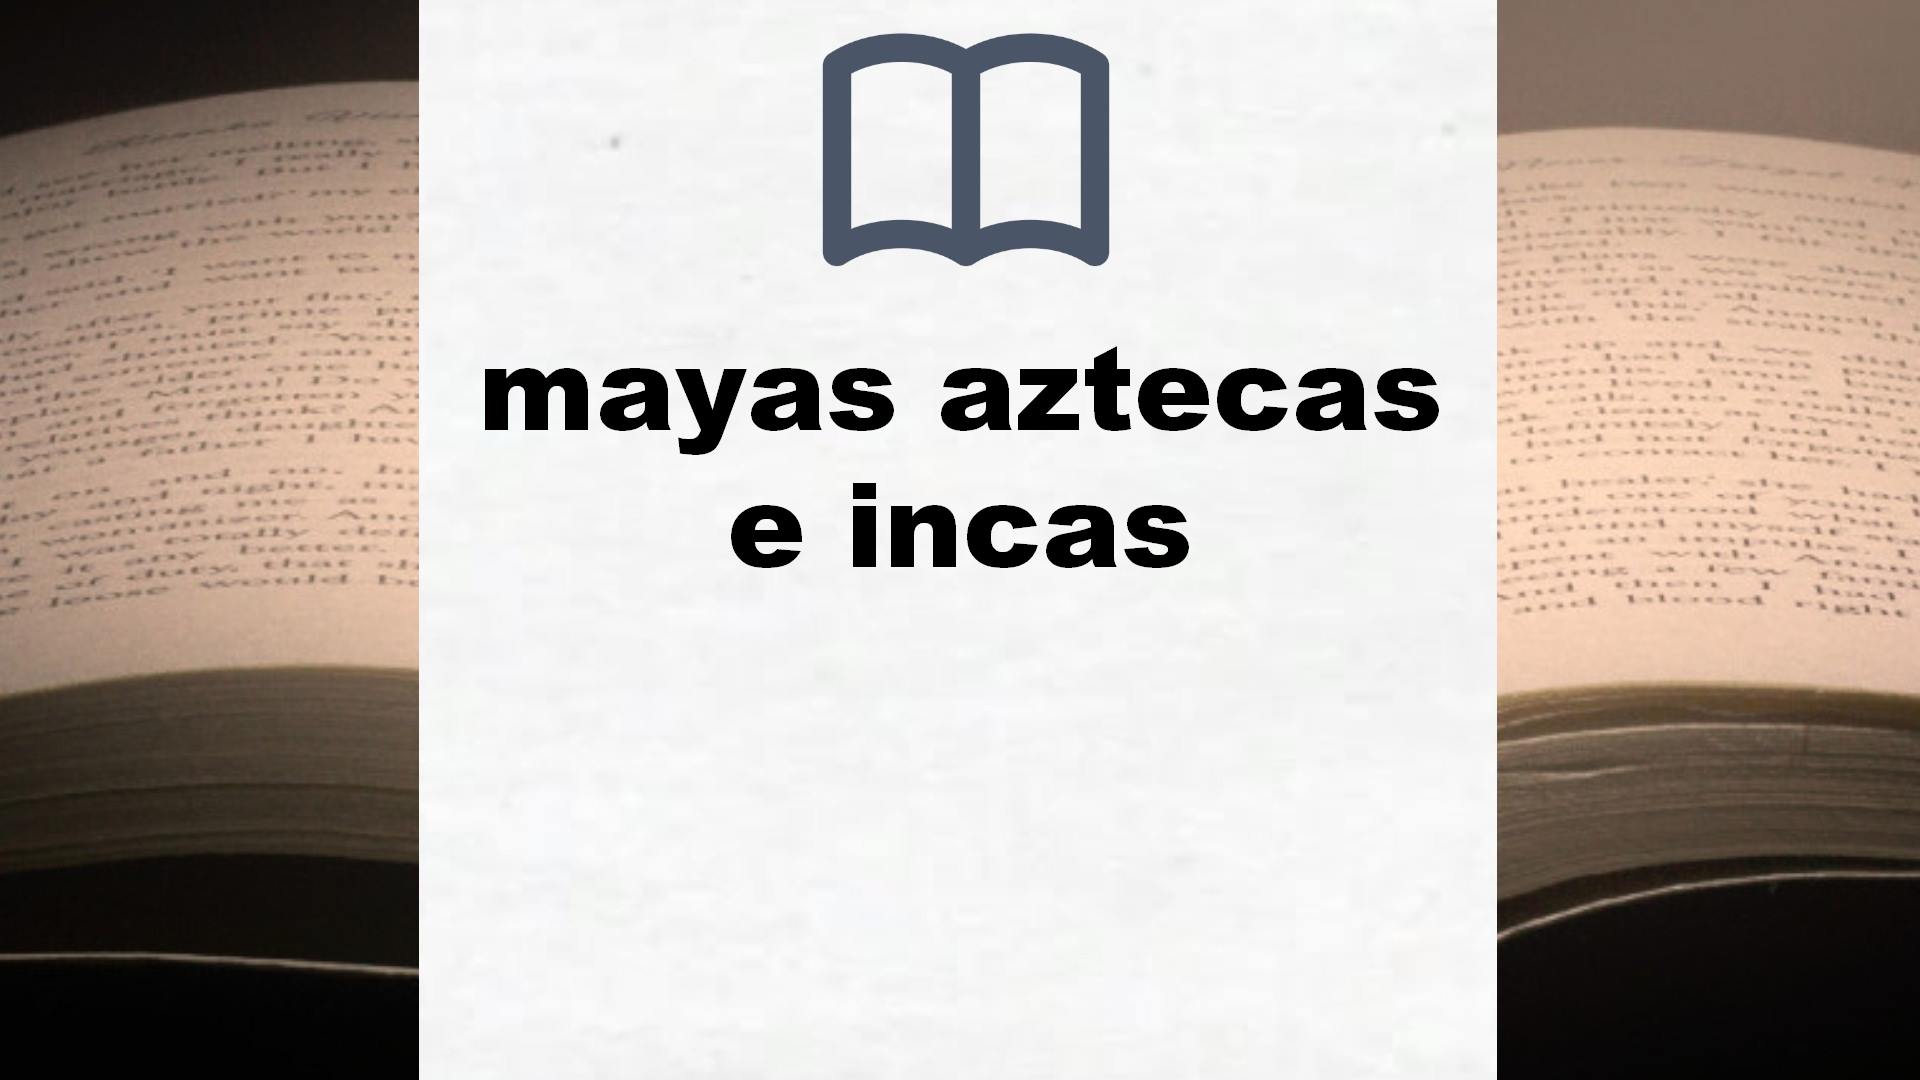 Libros sobre mayas aztecas e incas